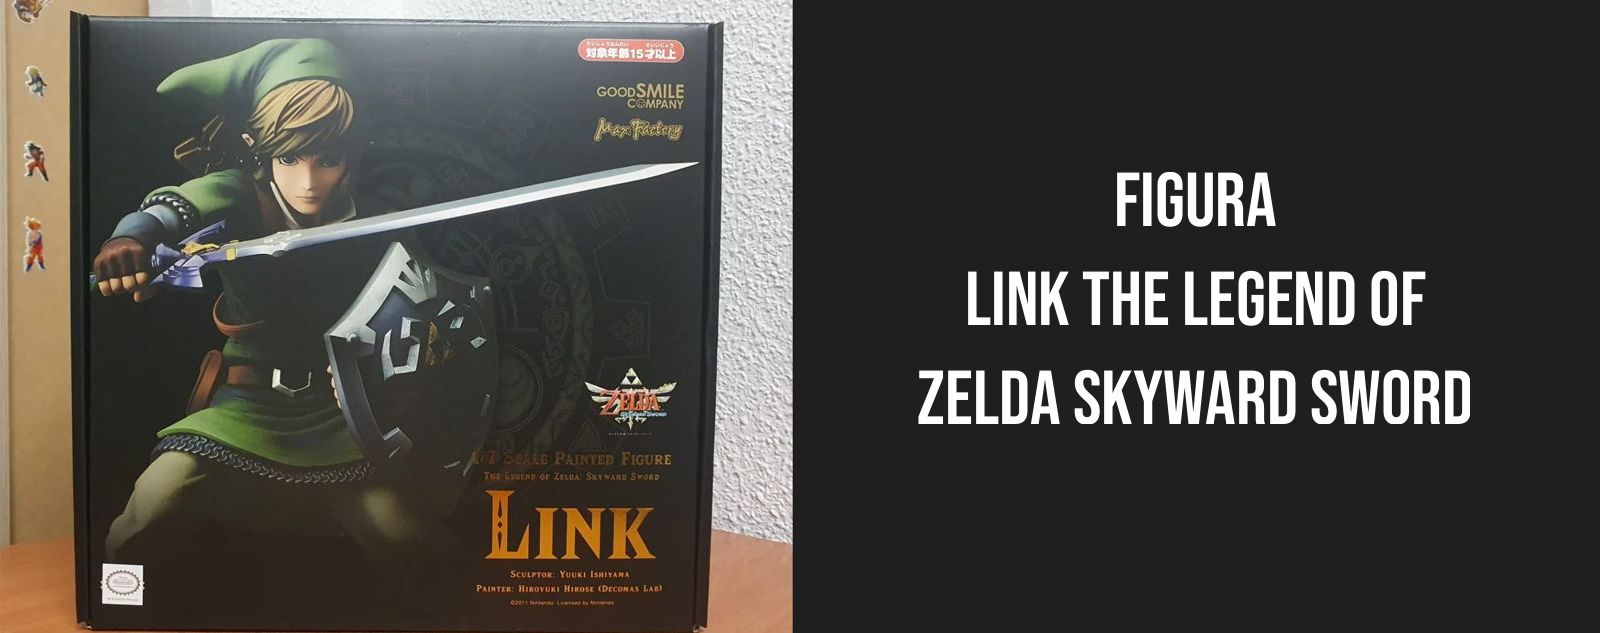 03-Link The Legend Of Zelda Skyward Sword